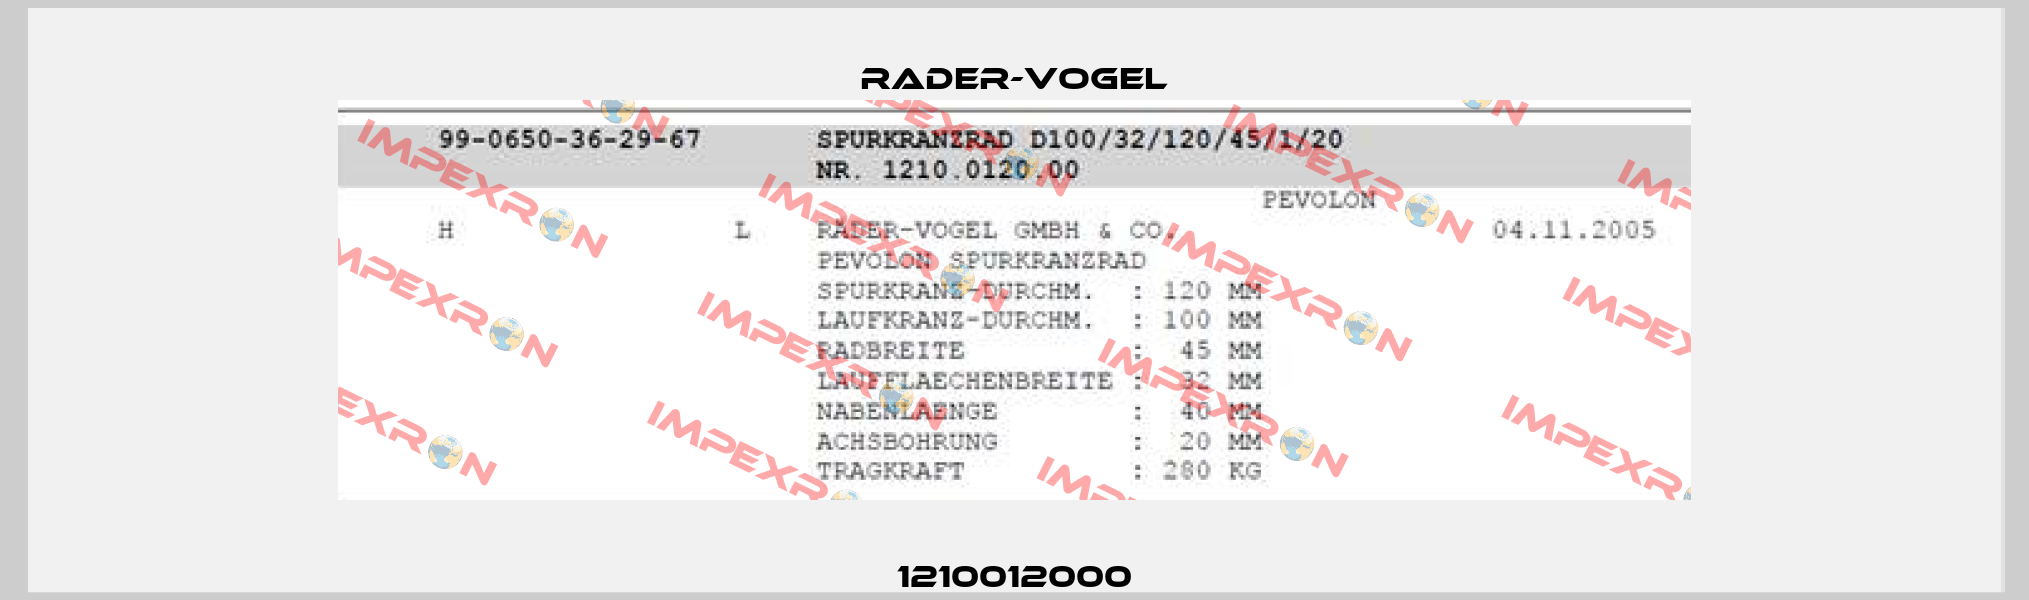 1210012000 Rader-Vogel